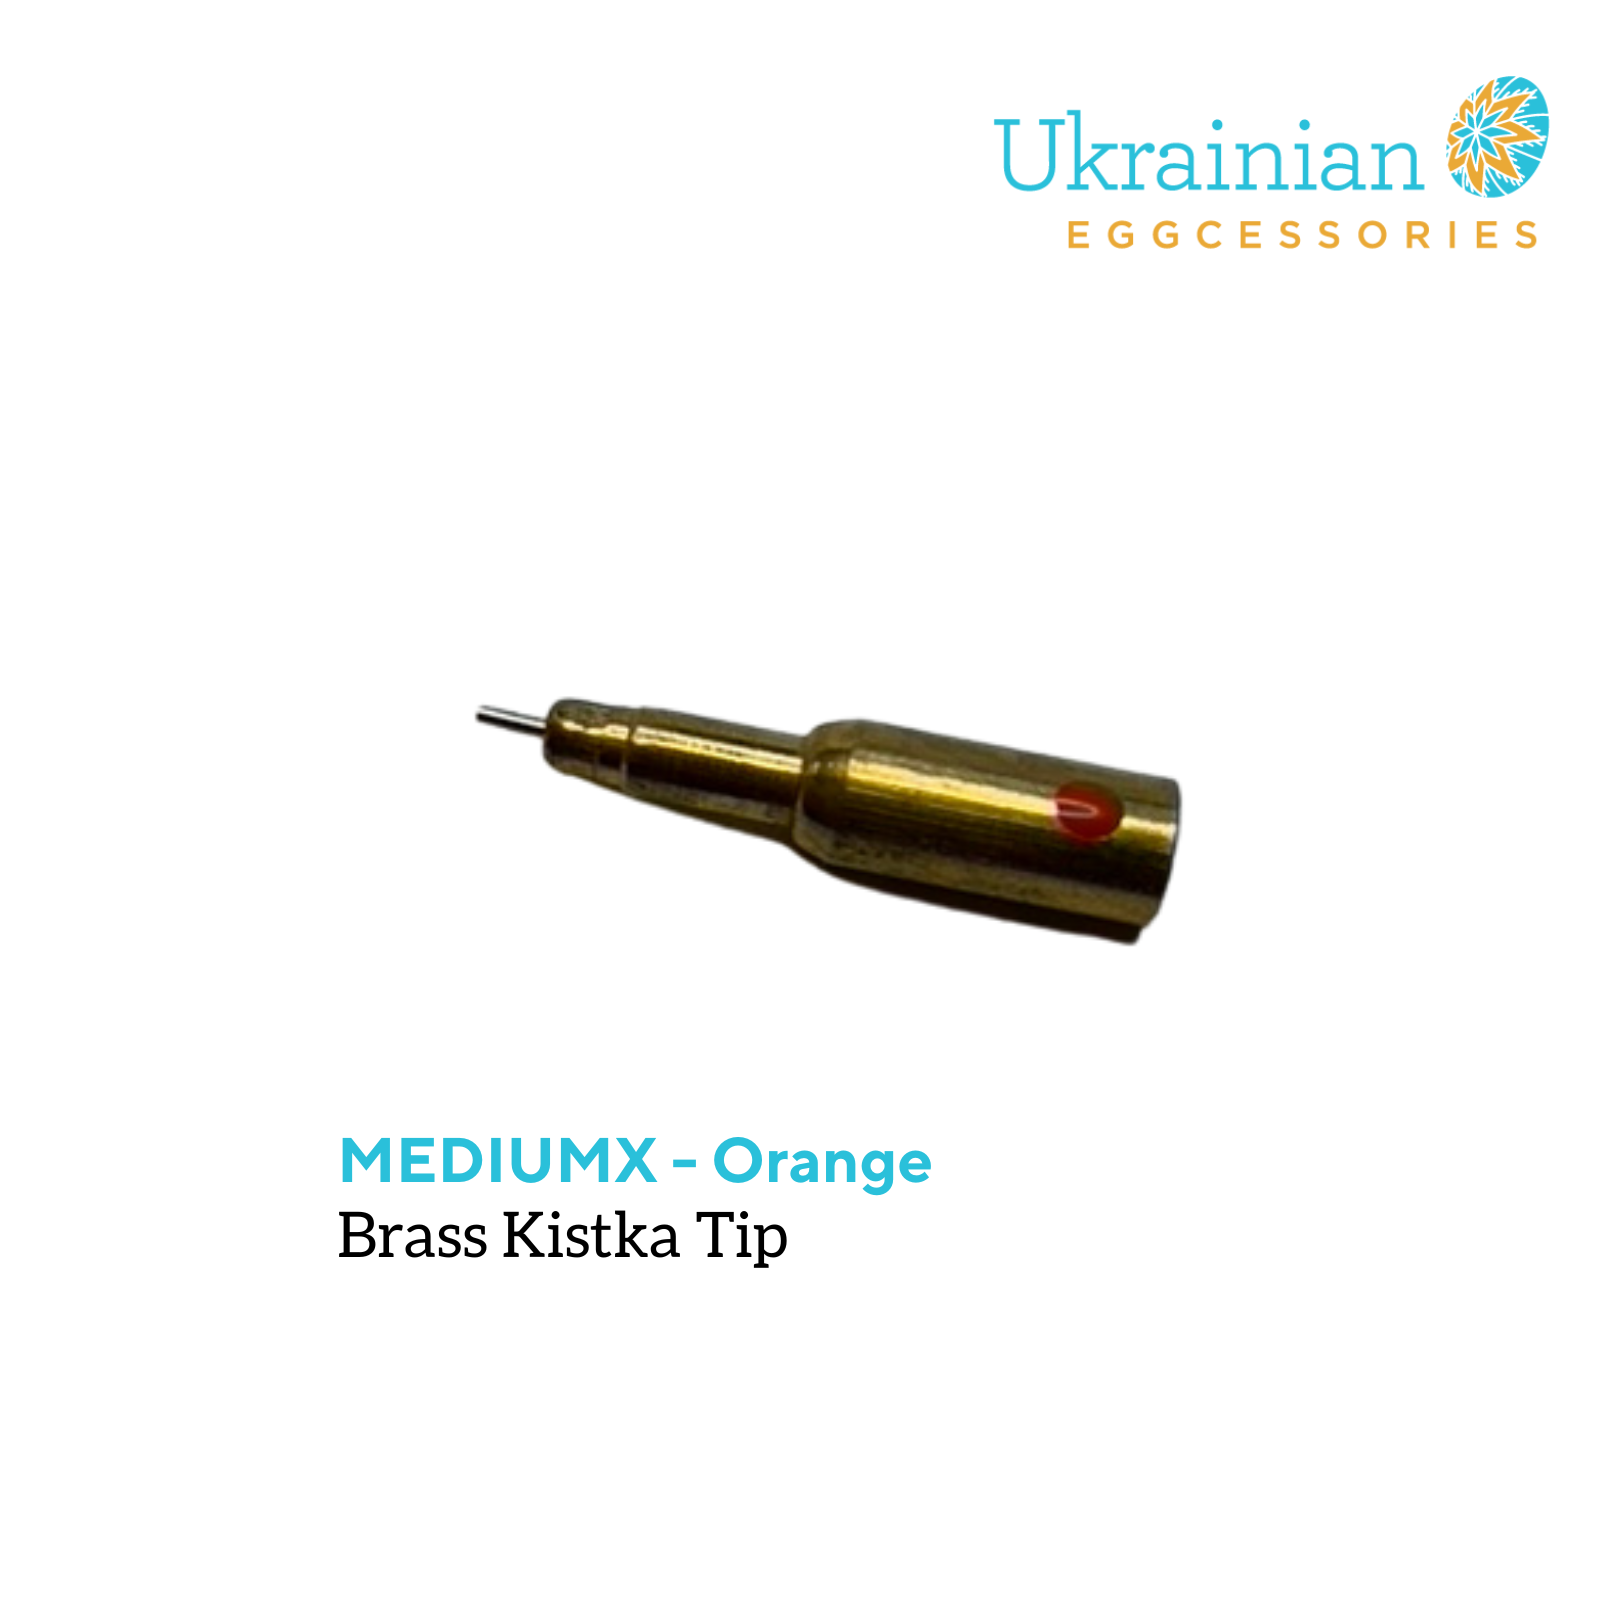 Brass Kistka Tip - #5 MediumX Tip for Orange Kistka